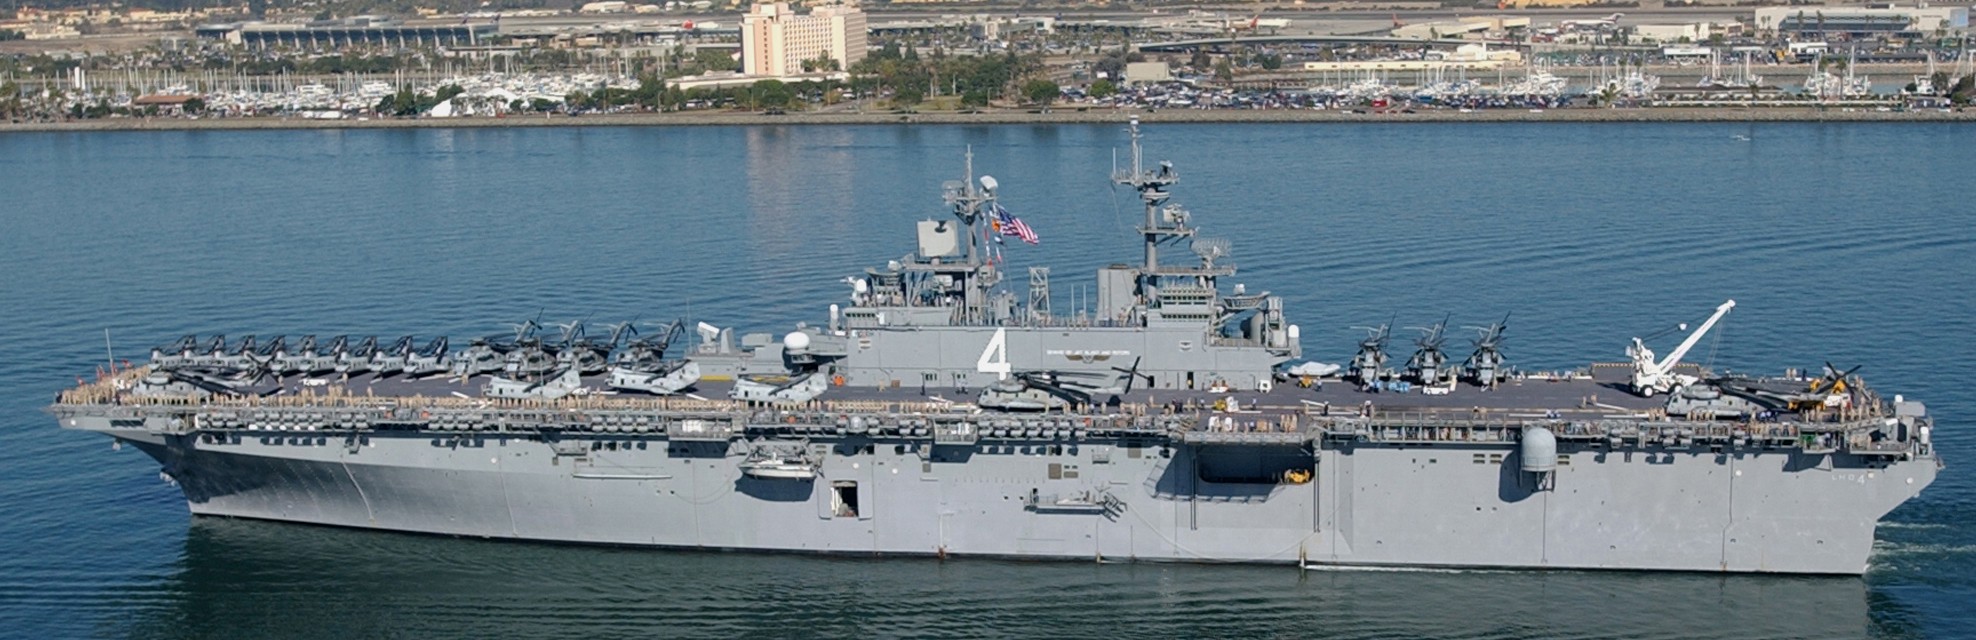 lhd-4 uss boxer wasp class amphibious assault ship dock landing us navy atf-w task force west 13